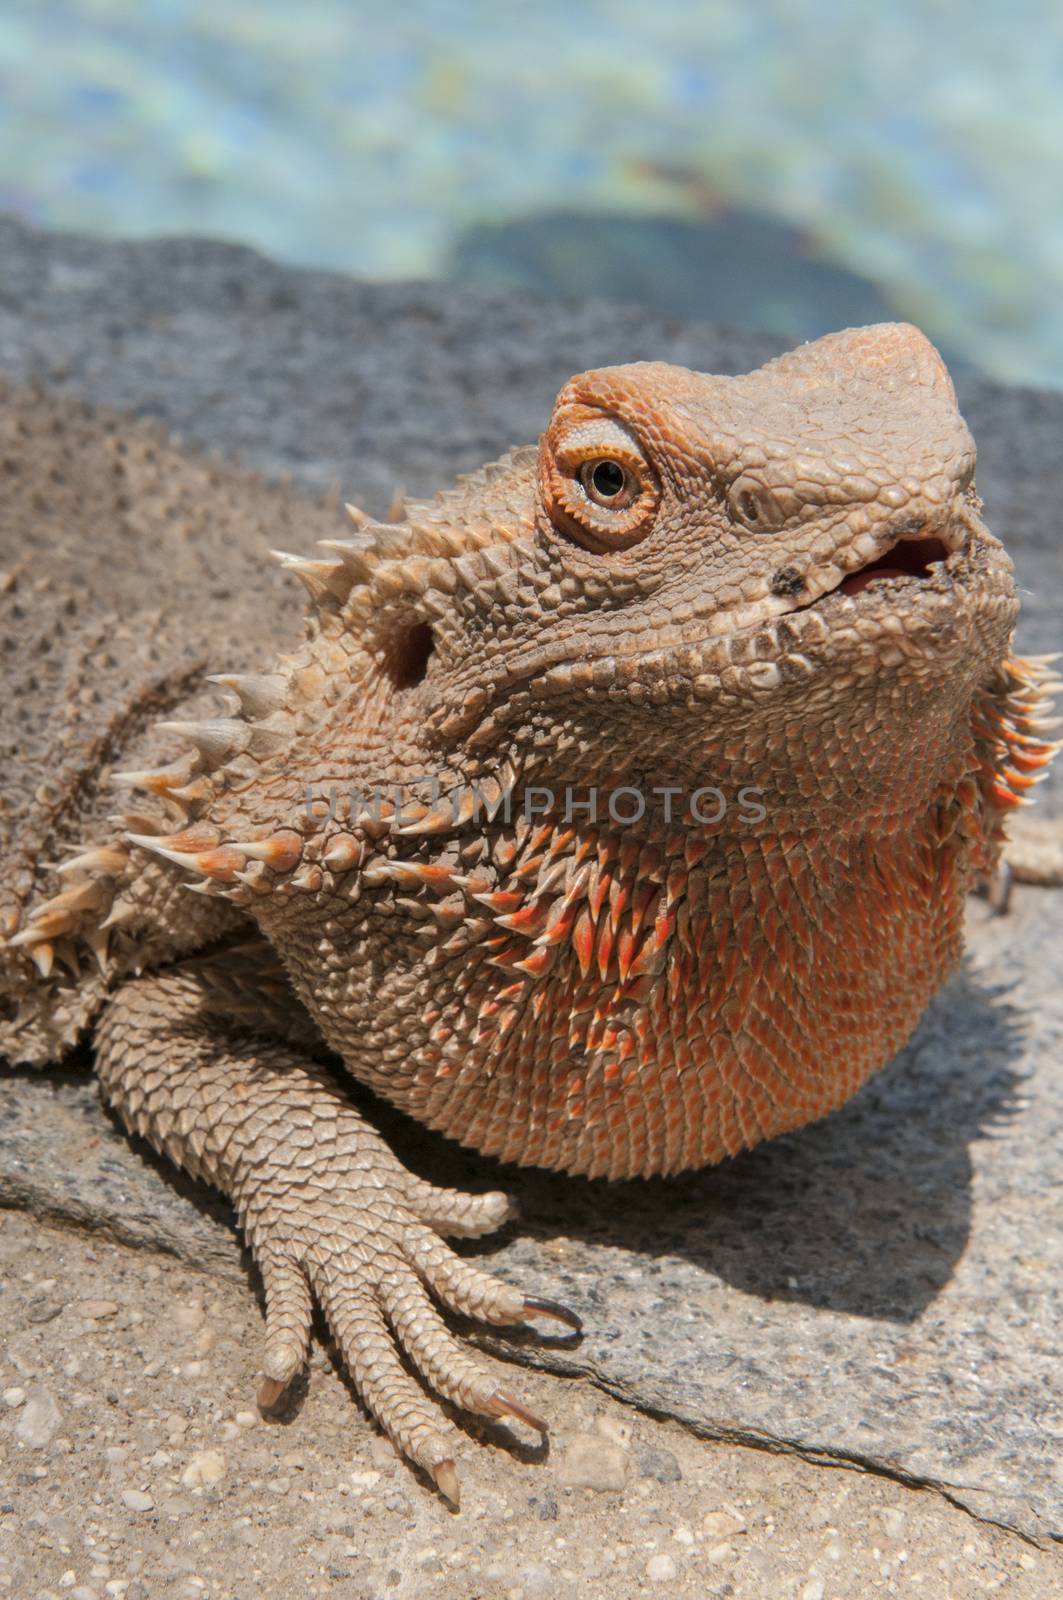 pet bearded dragon (Pogona) lizard by poolside by Njean